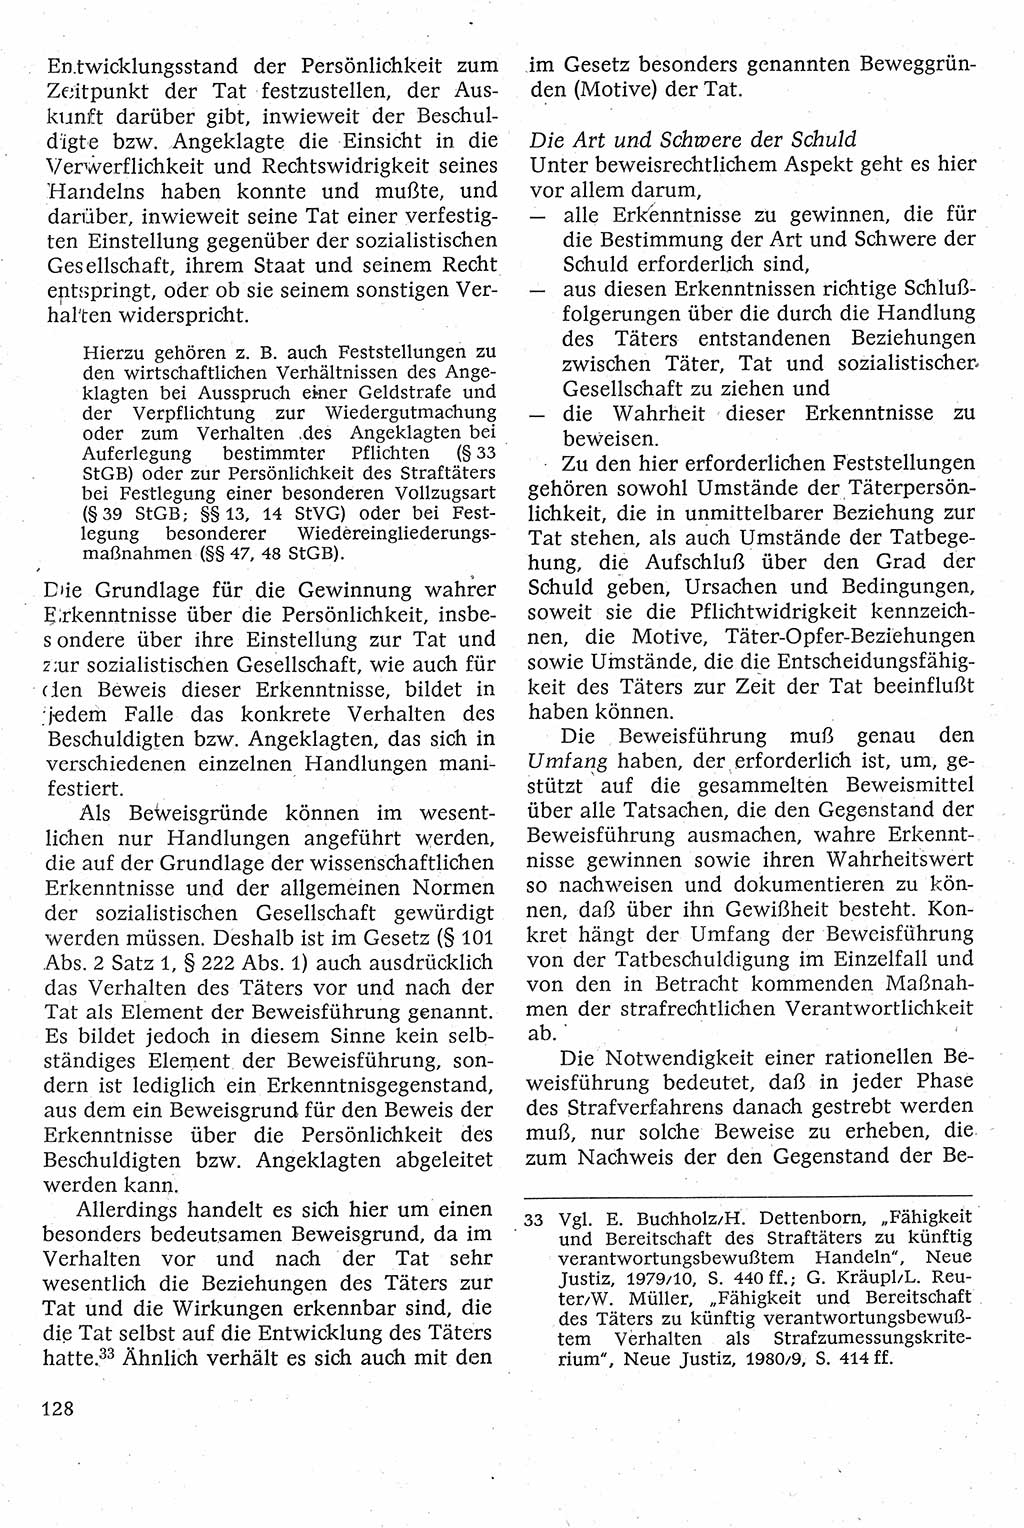 Strafverfahrensrecht [Deutsche Demokratische Republik (DDR)], Lehrbuch 1982, Seite 128 (Strafverf.-R. DDR Lb. 1982, S. 128)